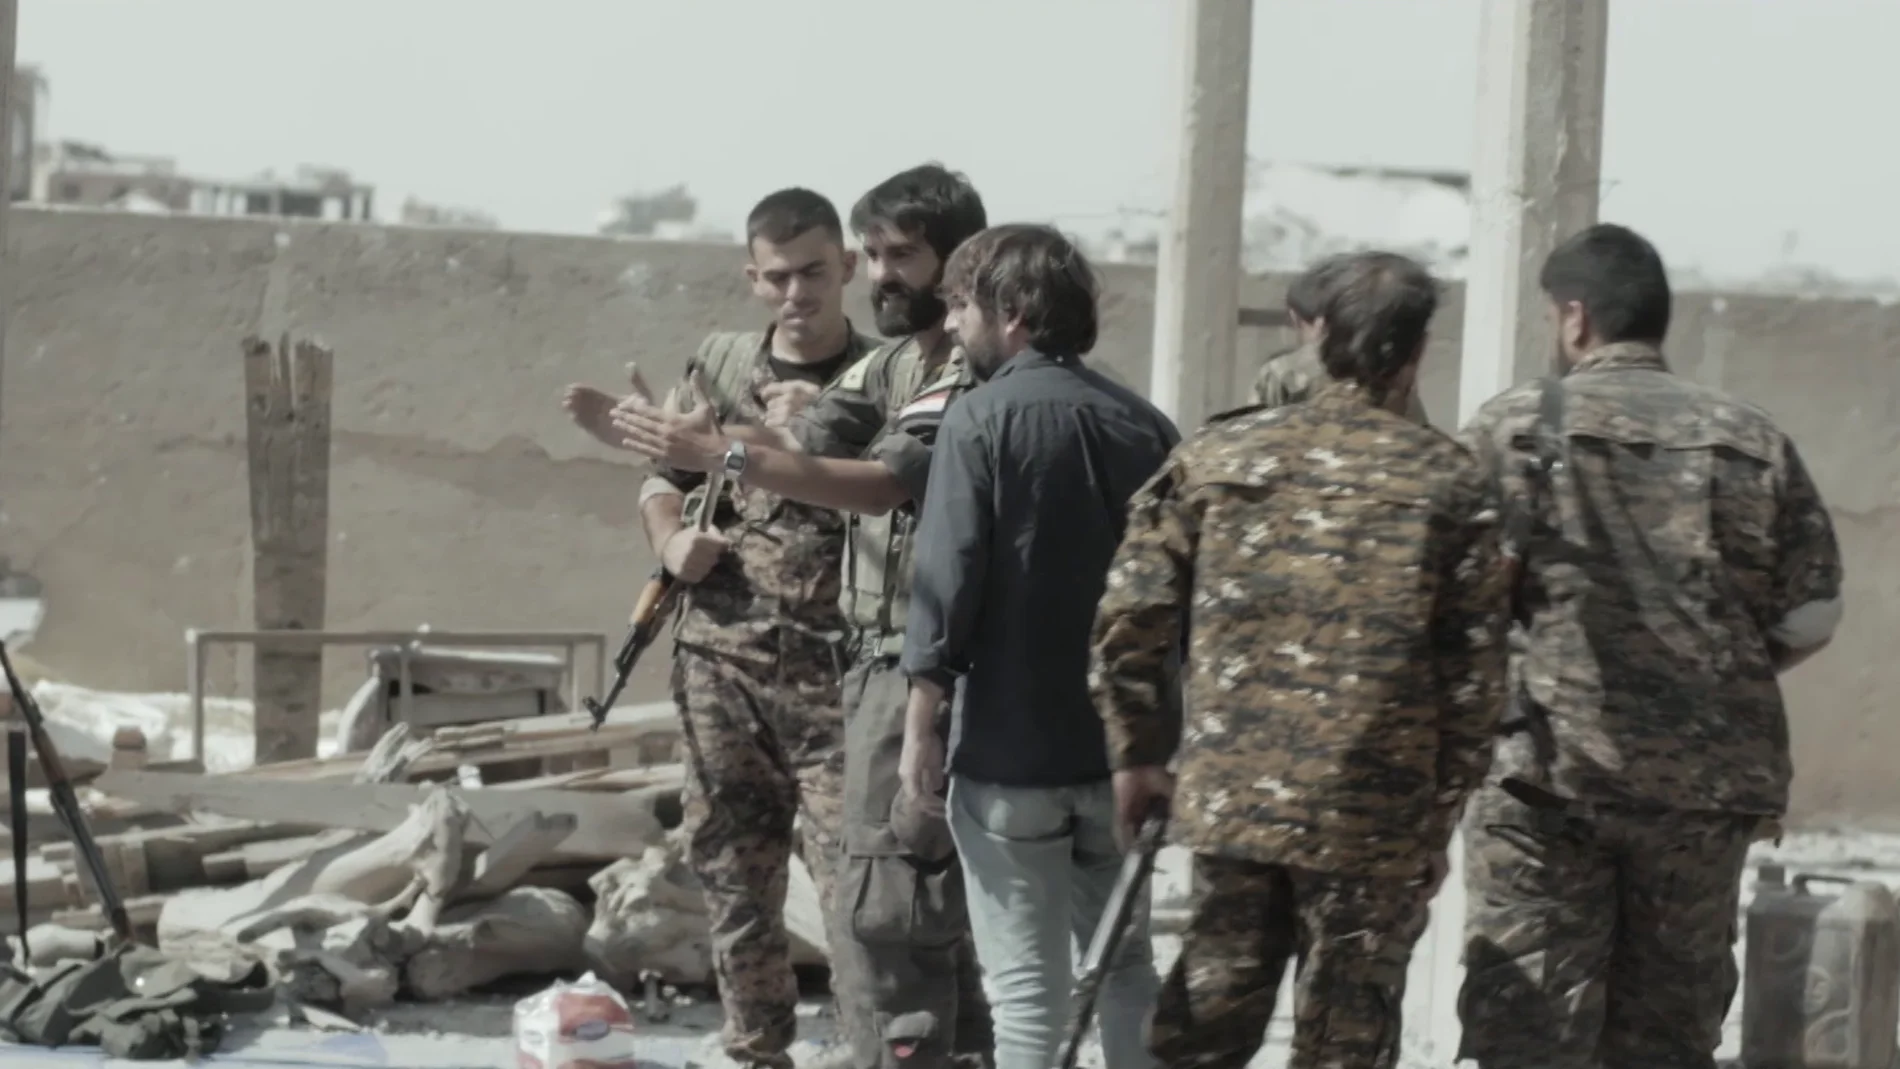 Jordi Évole en Raqqa